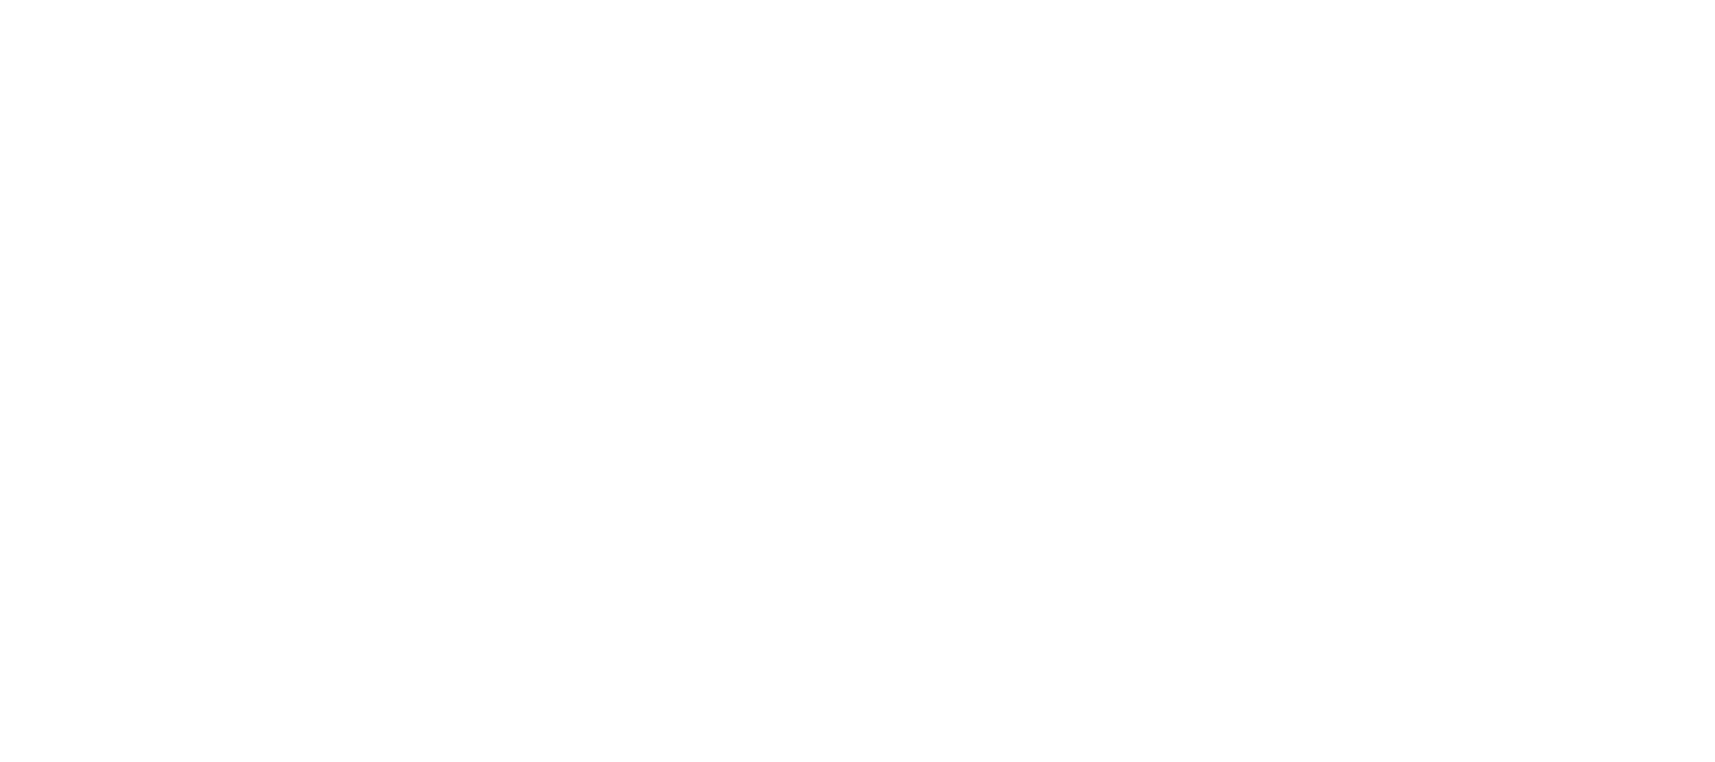 World Cancer Day Logo in Maldivian